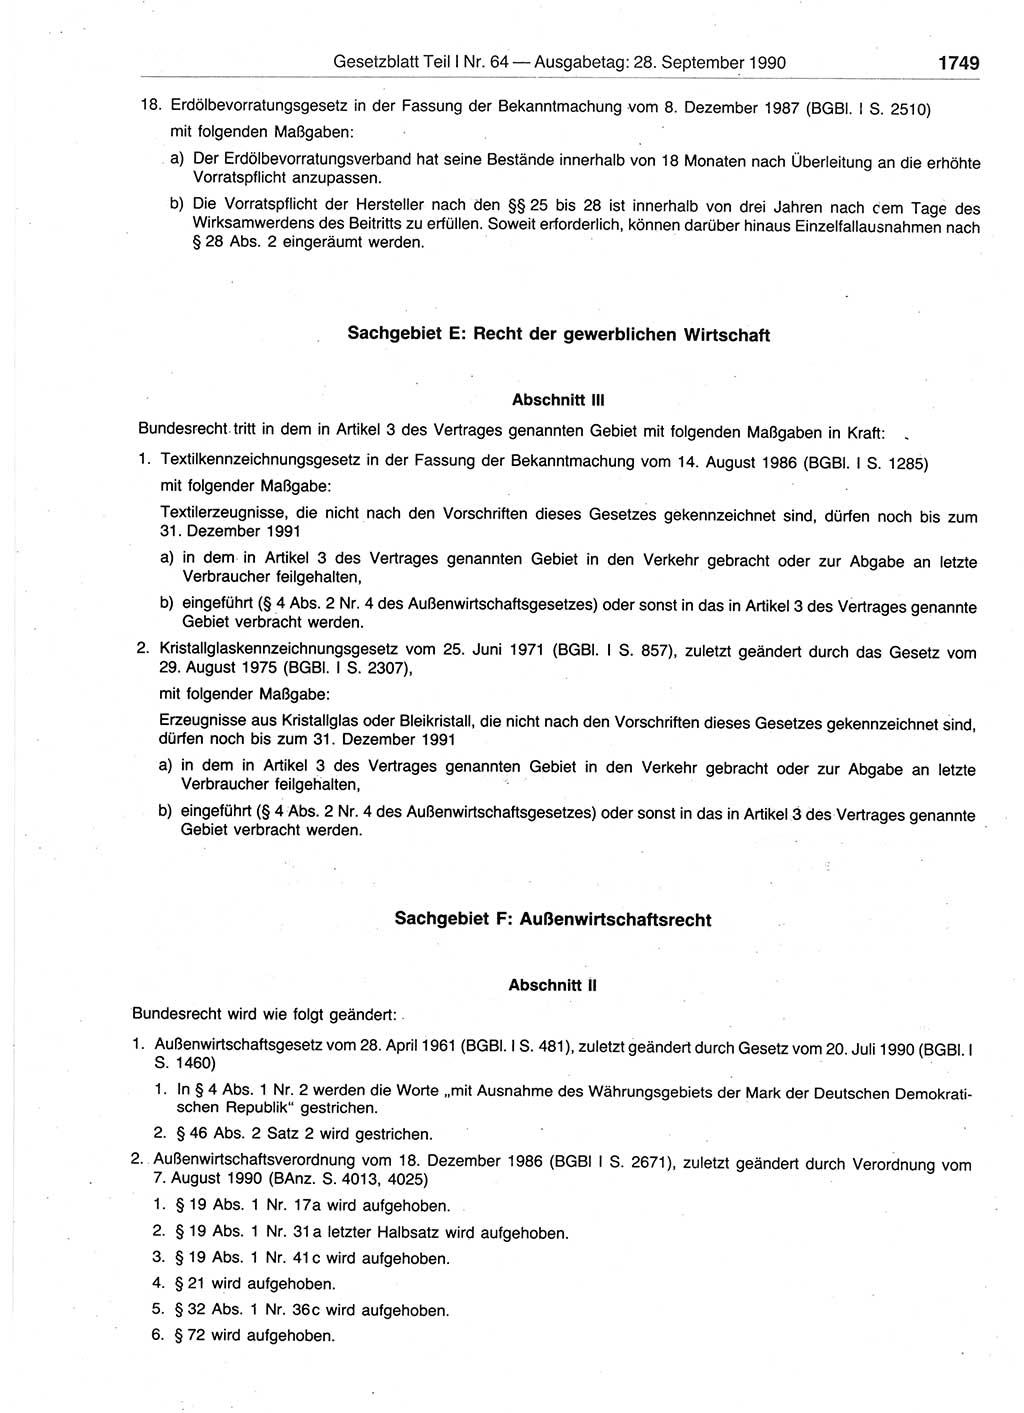 Gesetzblatt (GBl.) der Deutschen Demokratischen Republik (DDR) Teil Ⅰ 1990, Seite 1749 (GBl. DDR Ⅰ 1990, S. 1749)